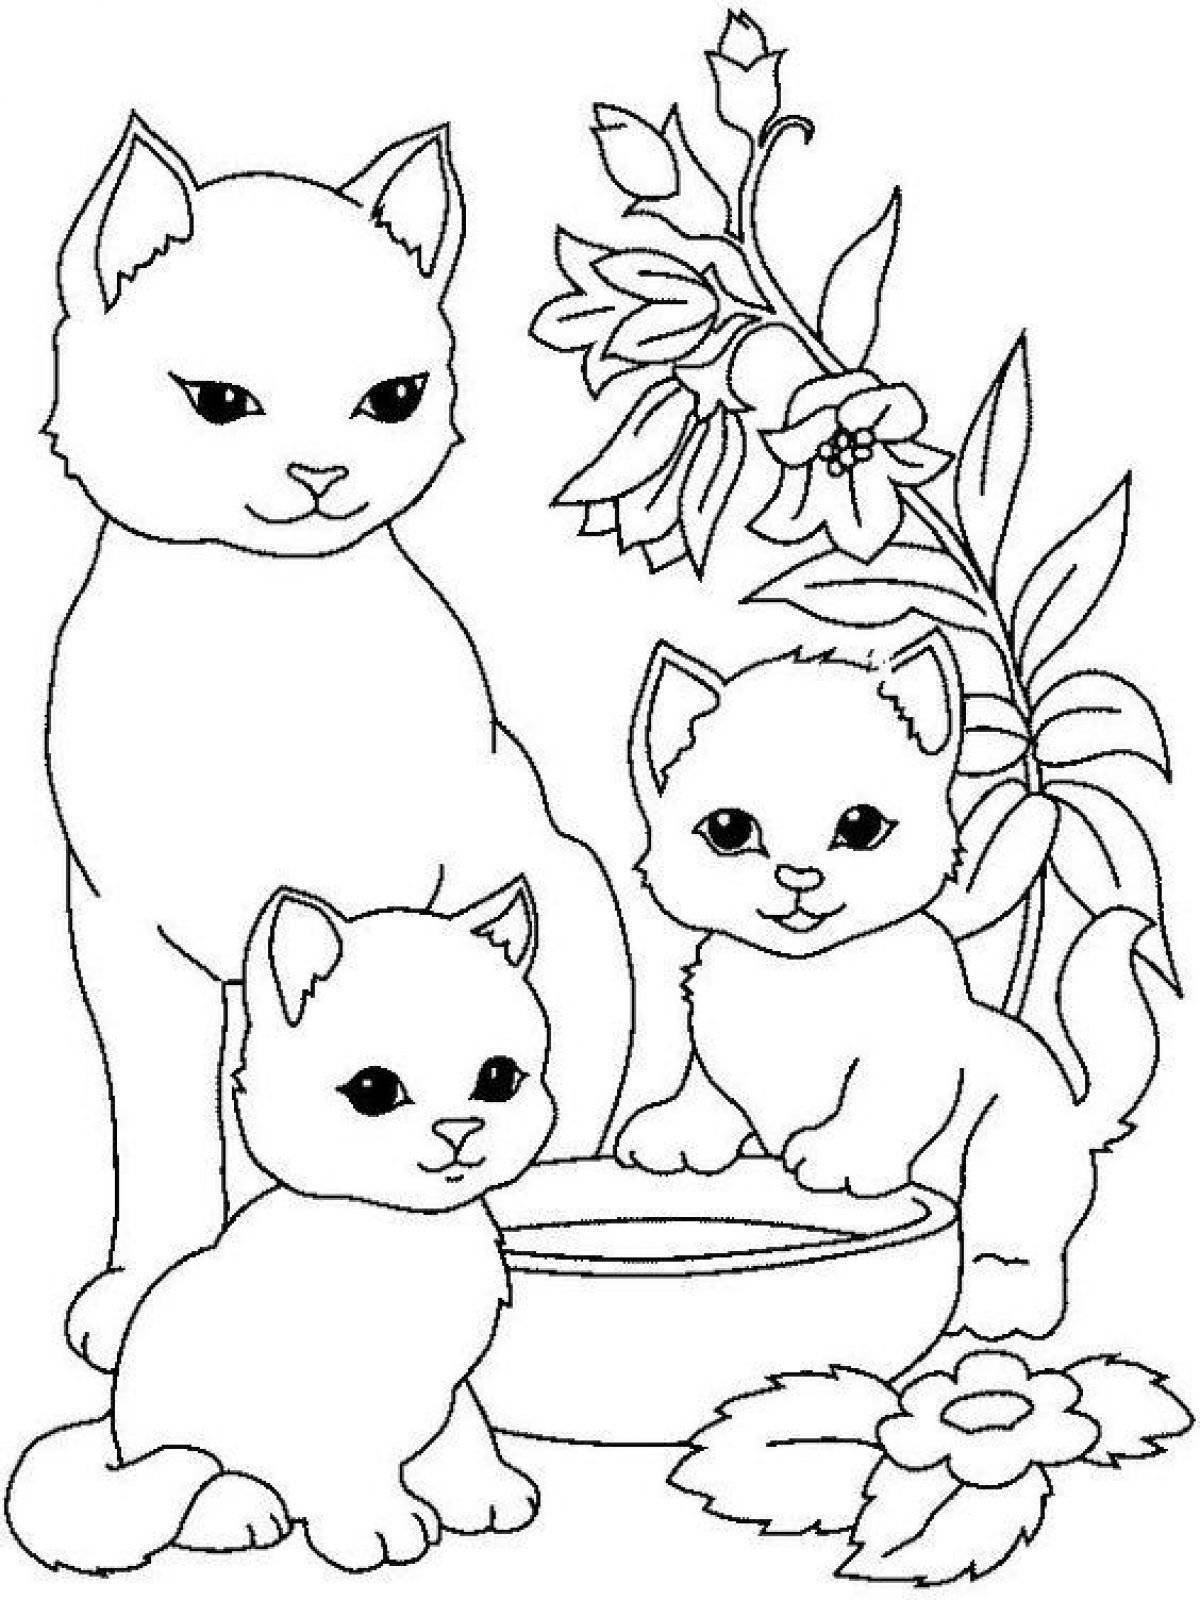 Восхитительная раскраска котэ для детей